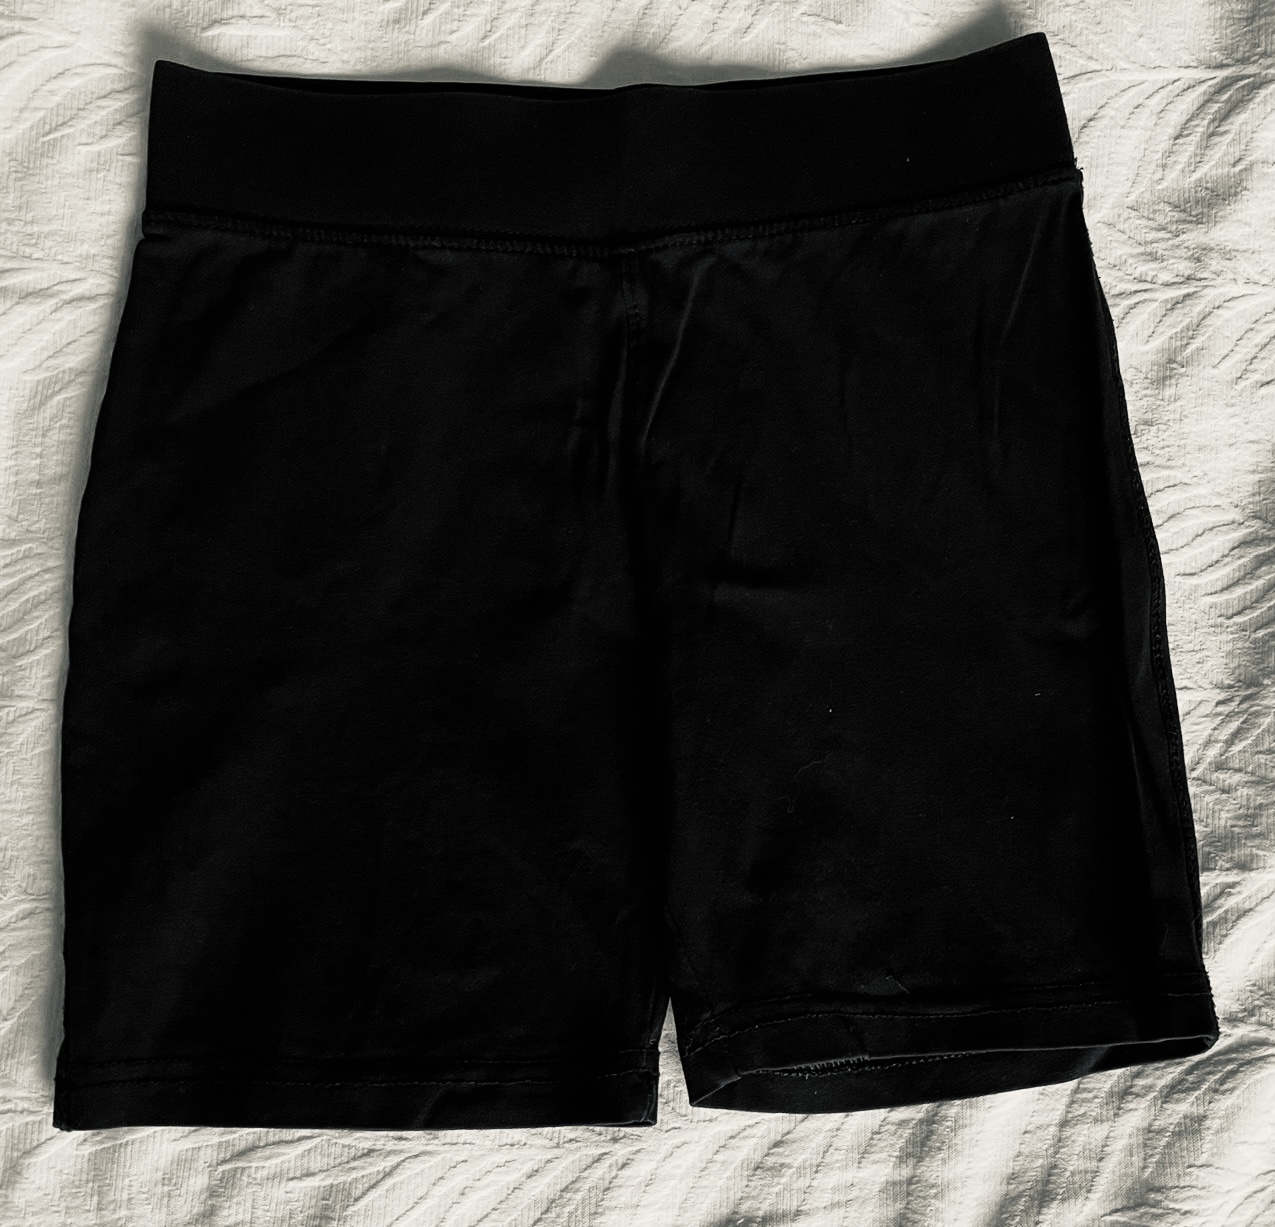 Black Cycling Shorts 4-5 / 5 yrs